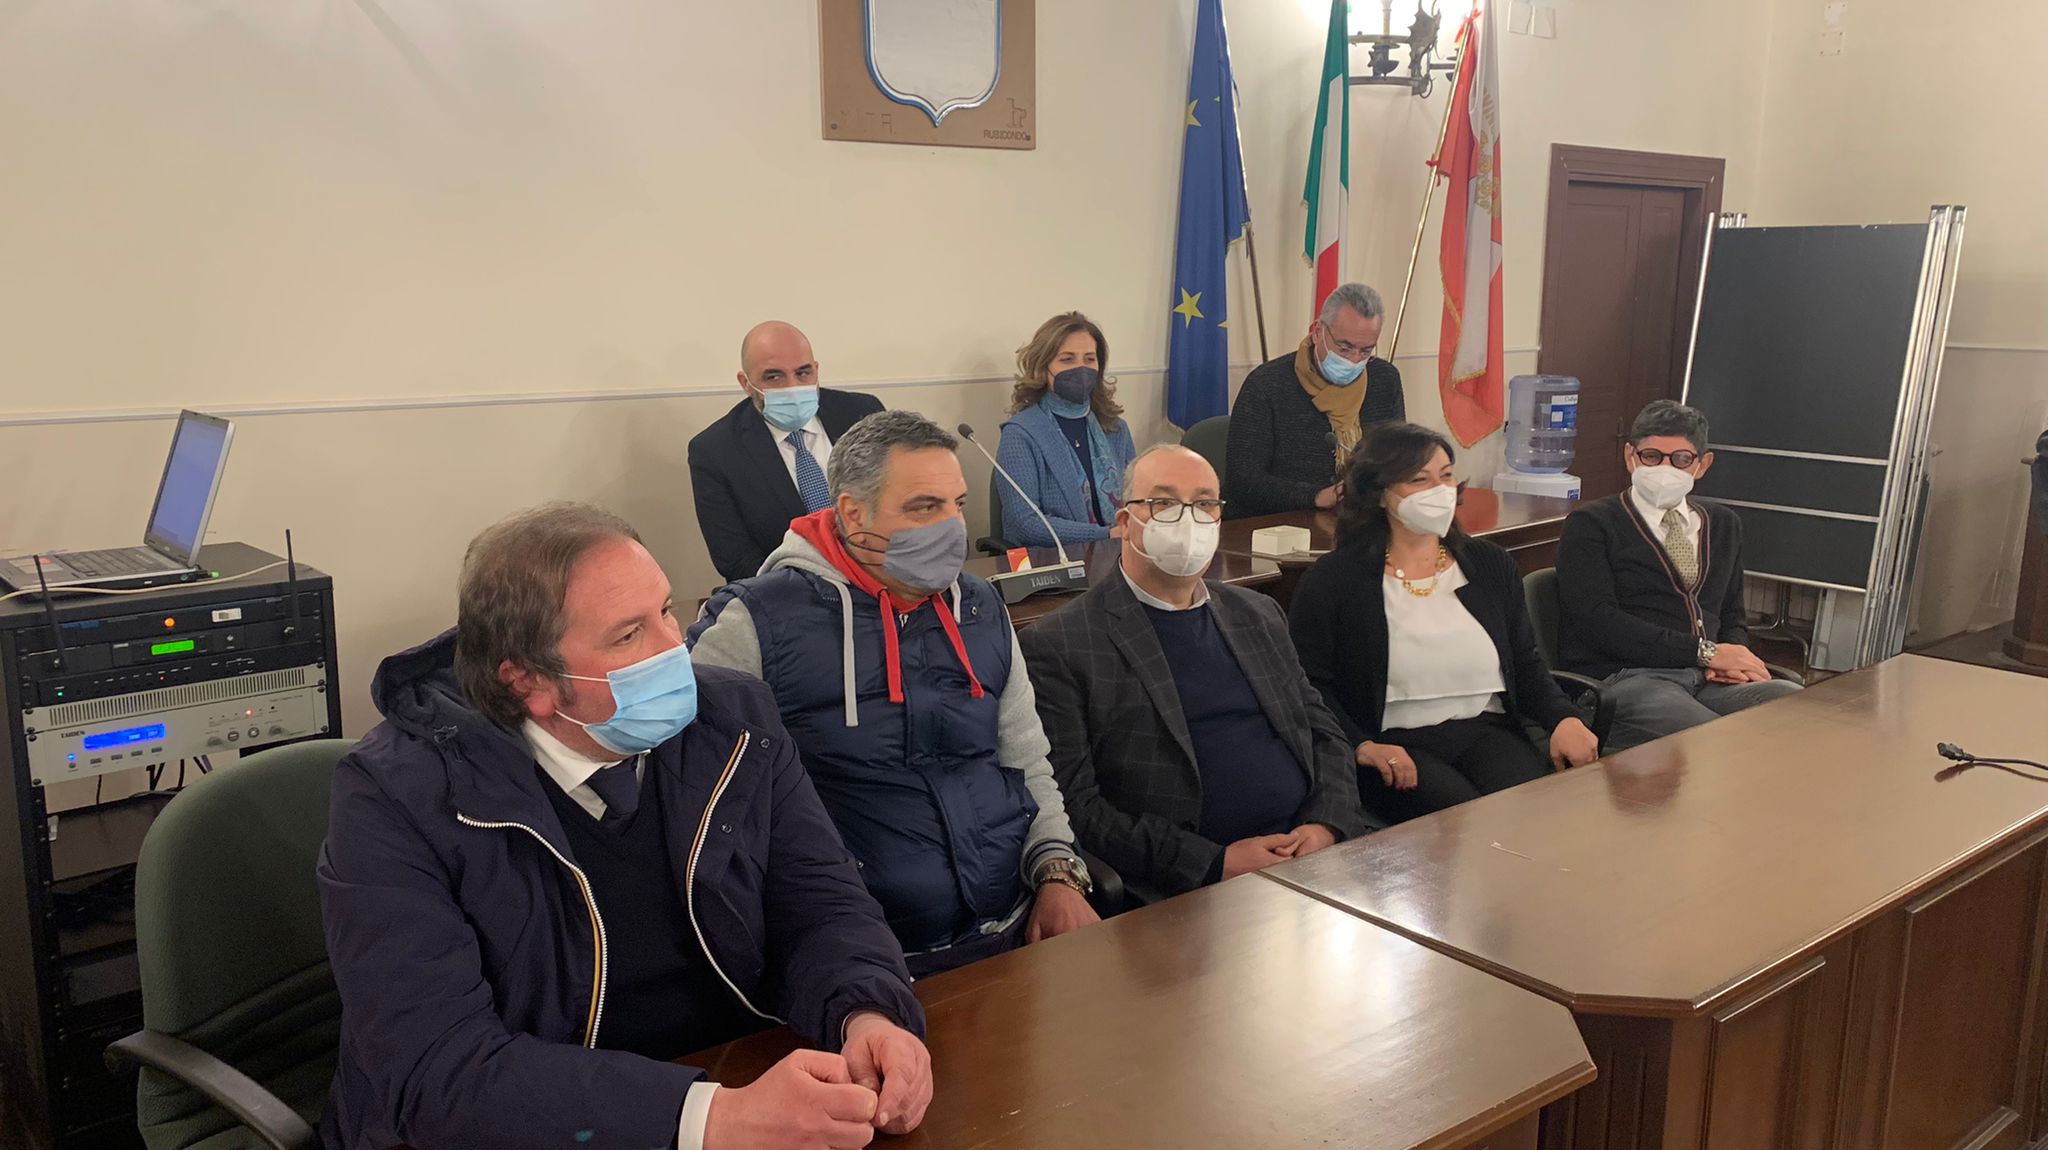 Avellino| Provincia, ecco i consiglieri eletti: Per il presidente Buonopane solo 5 su 12